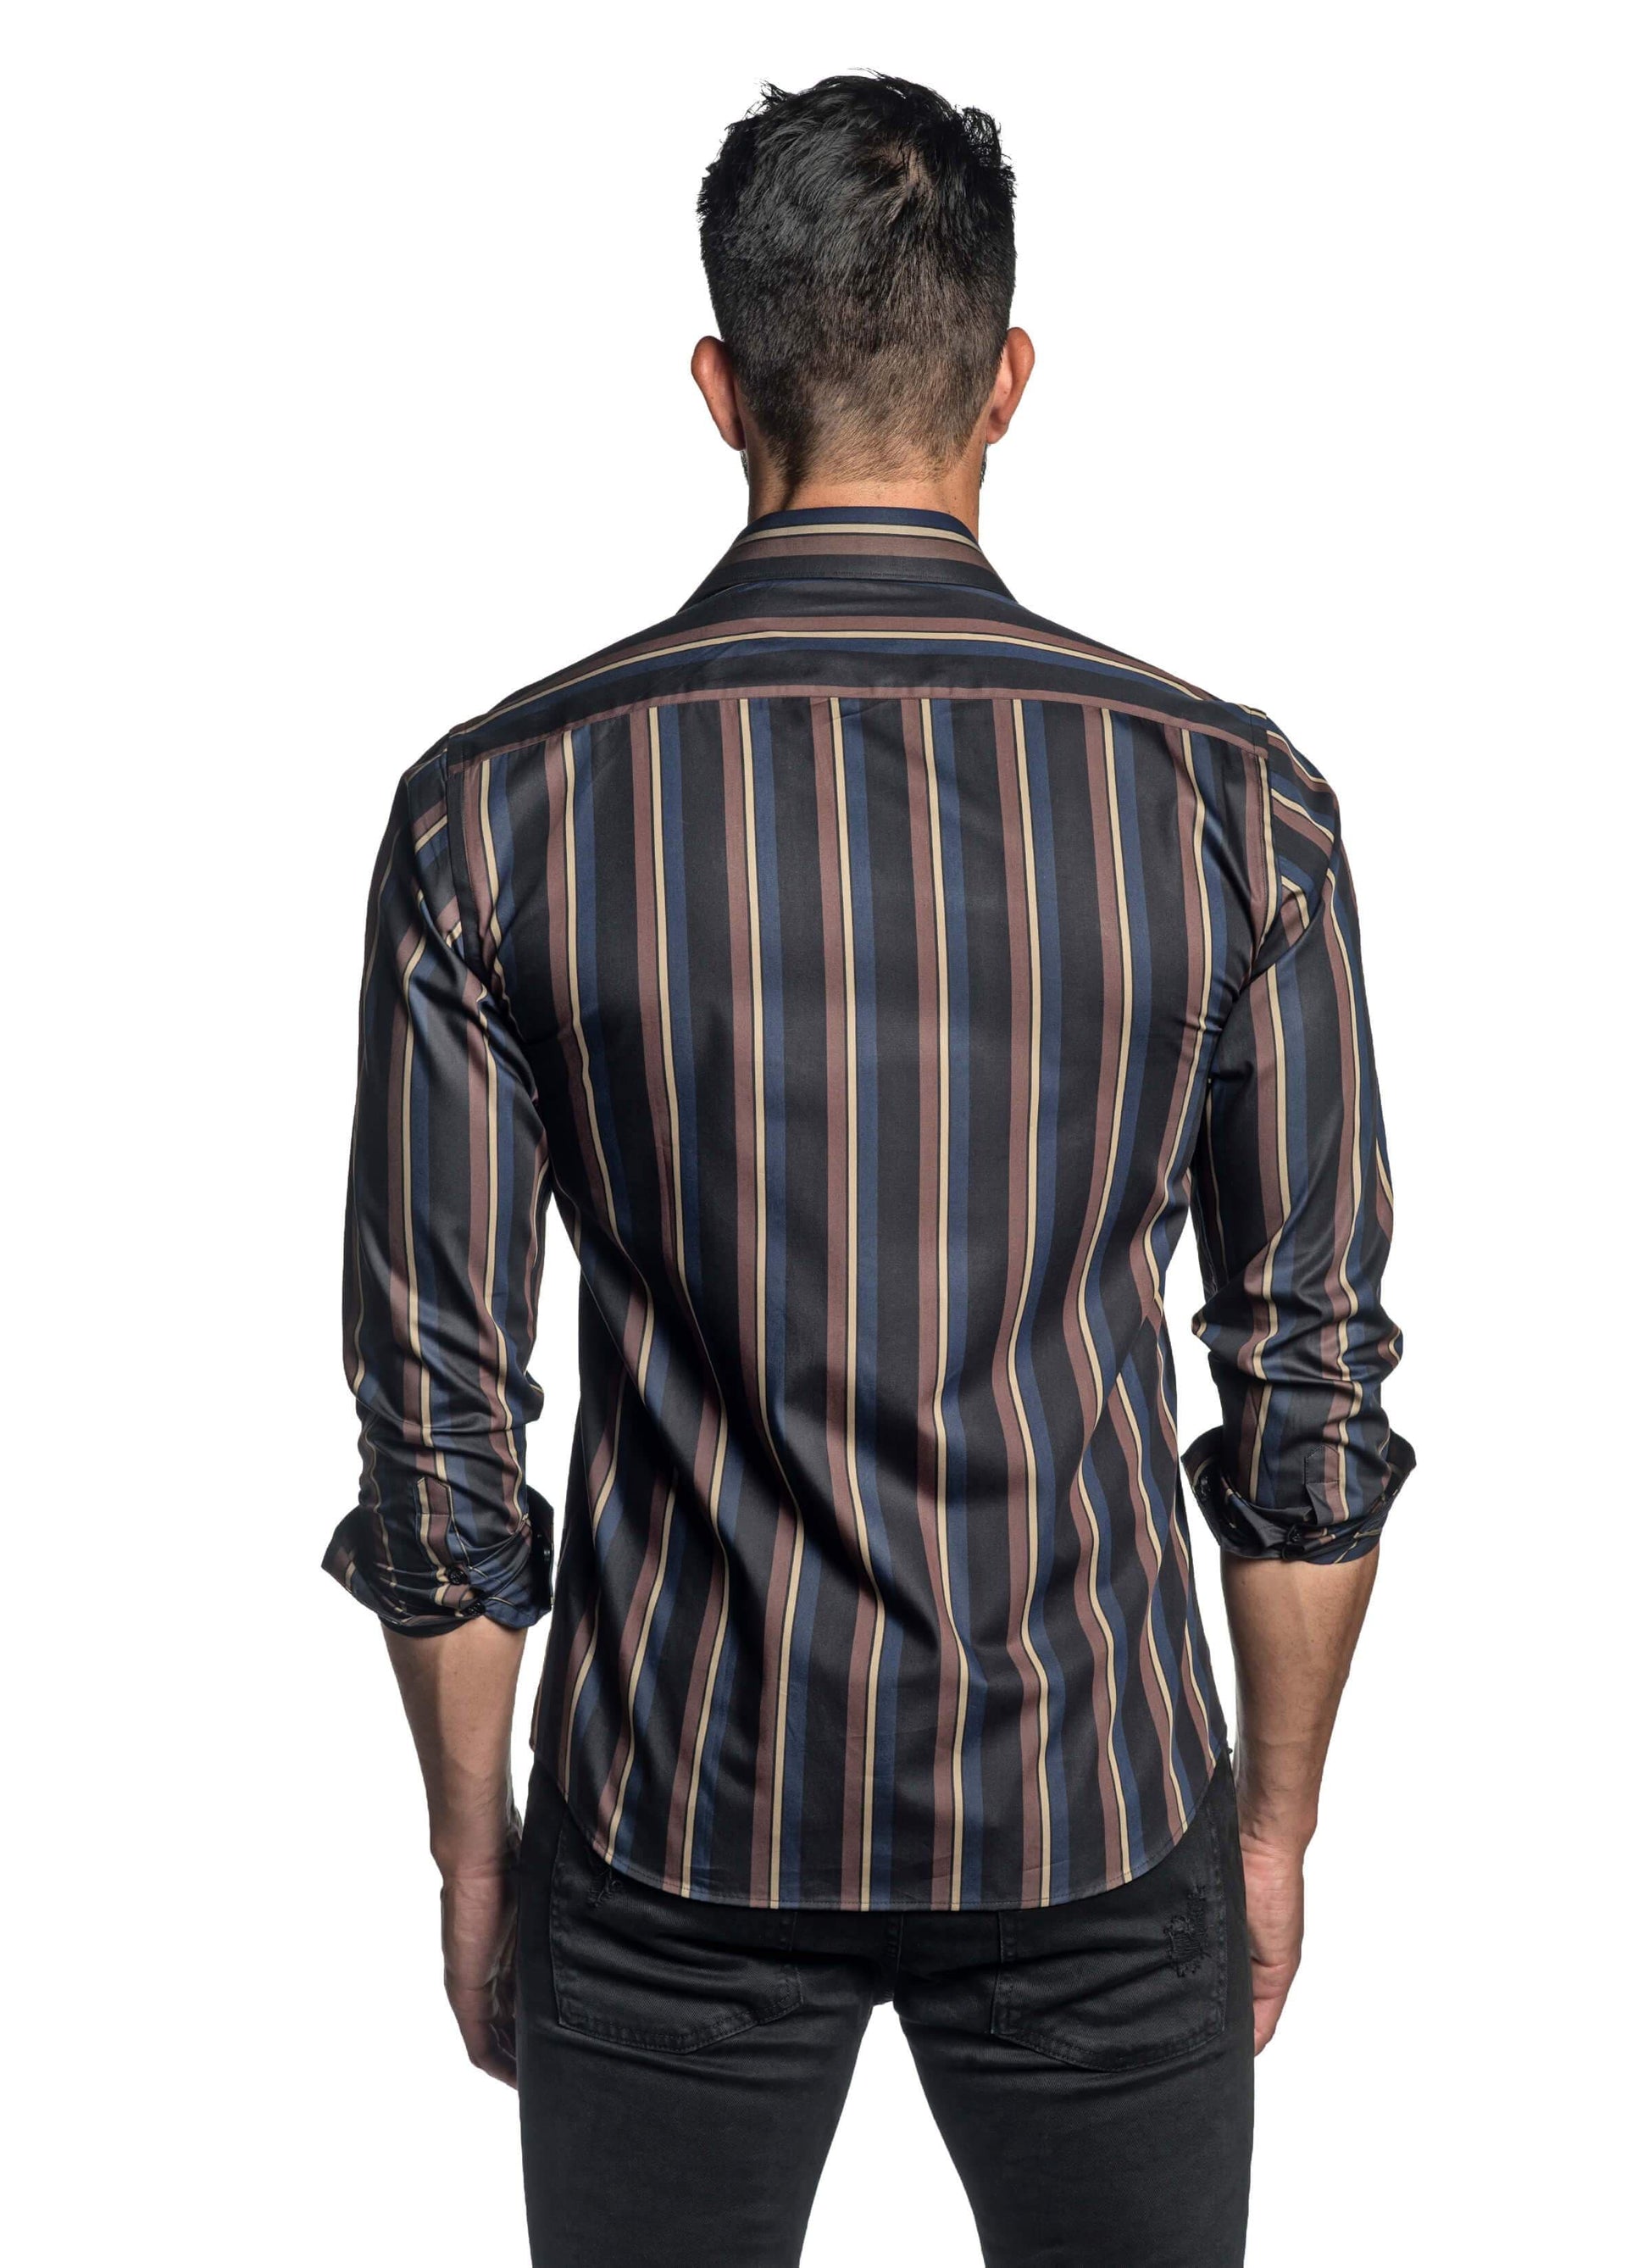 Black Blue and Brown Stripe Shirt for Men T-2646 - Back - Jared Lang